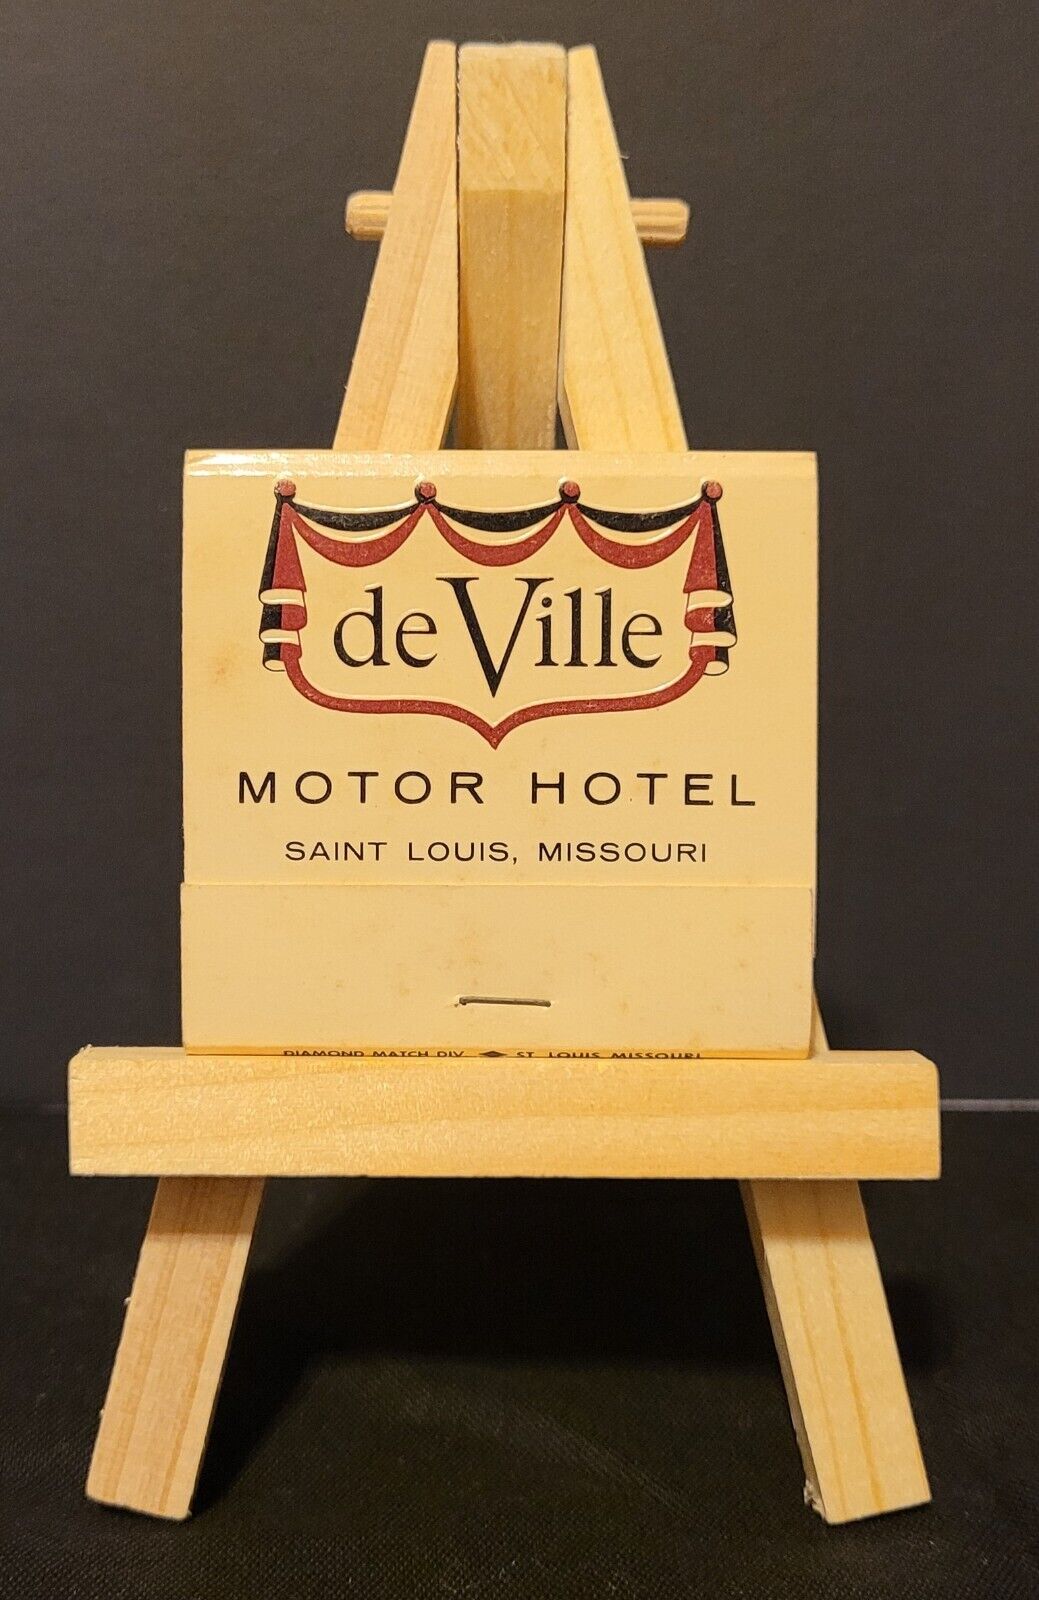 DeVille Motor Hotel French Room Restaurant Vintage Unstruck Matchbook